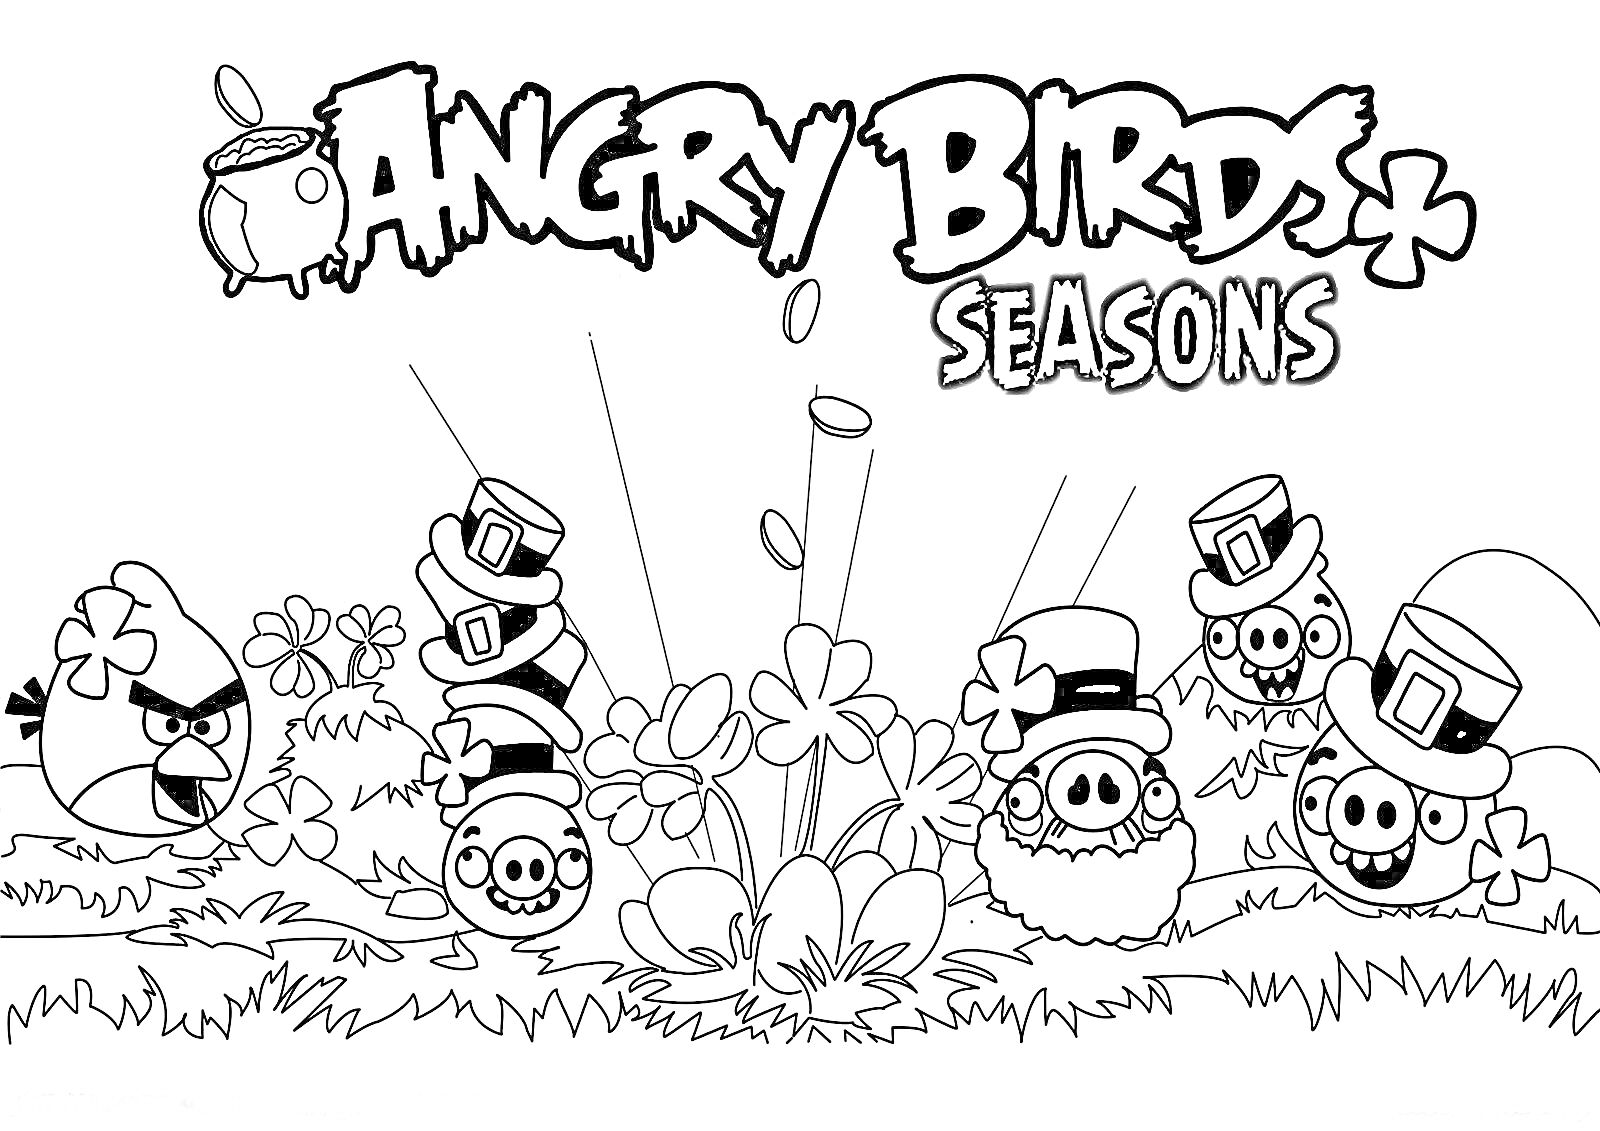 Раскраска Angry Birds Seasons с одним злым красным птицей, четырьмя свиньями в цилиндрах, пушкой и растительностью на переднем плане